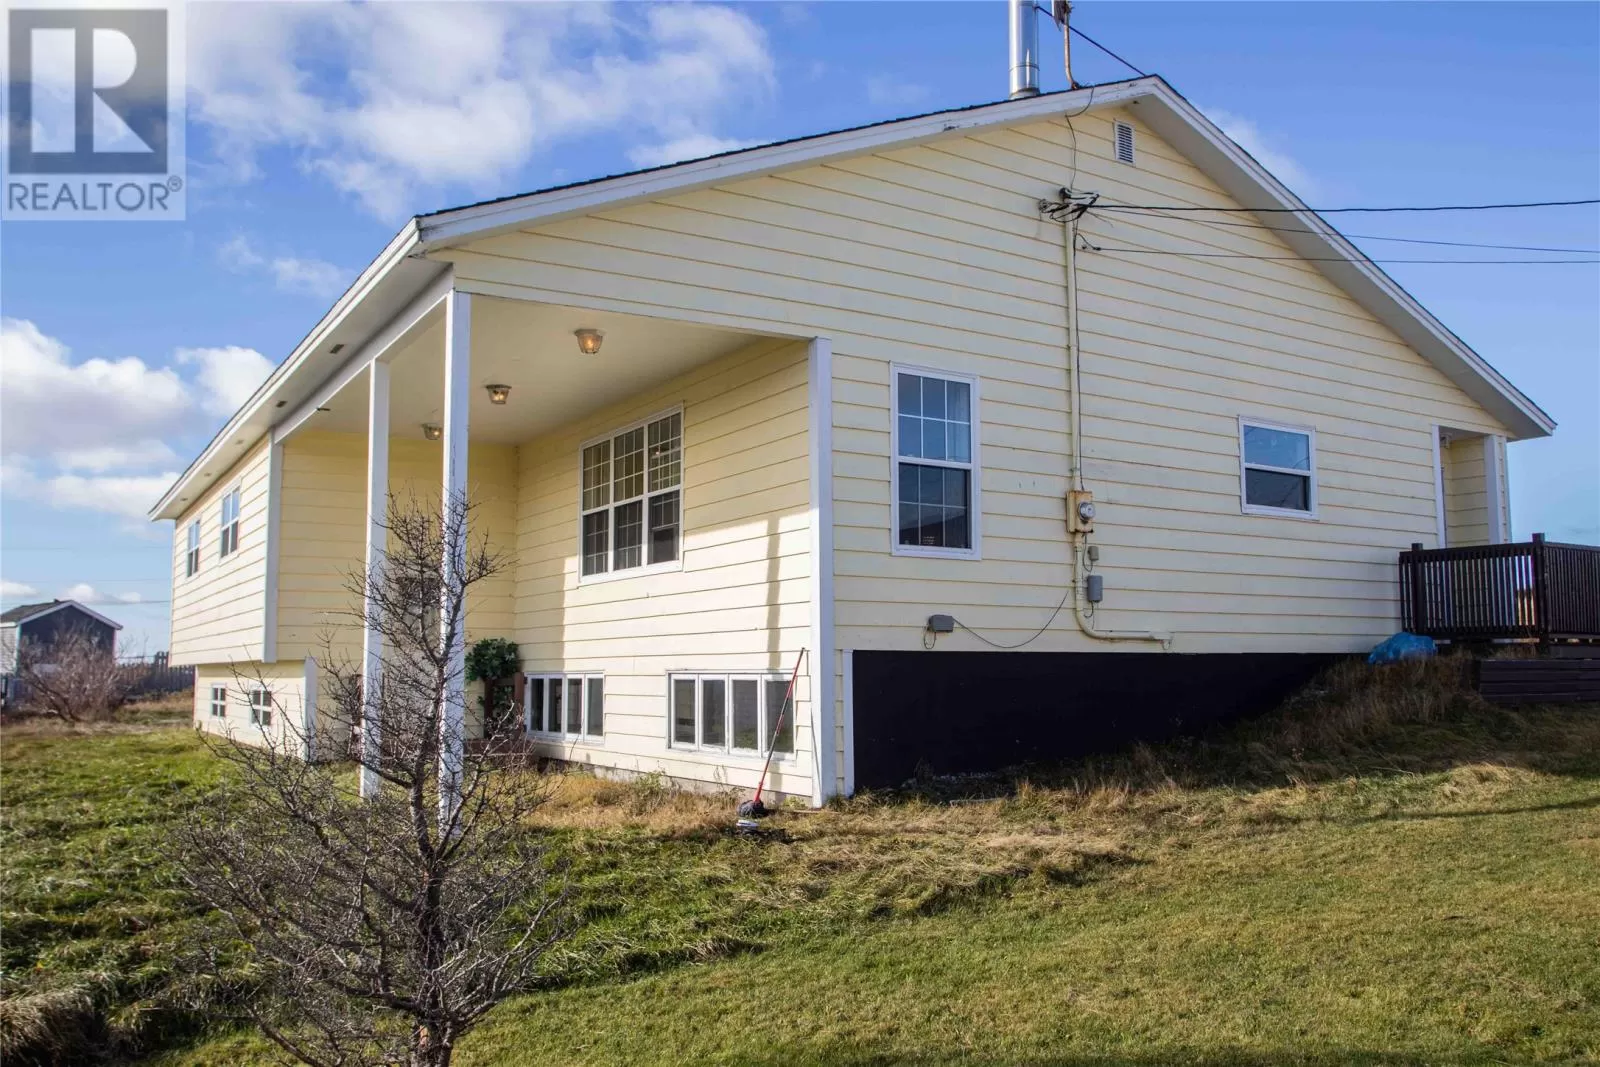 House for rent: 11a Red Cove Road, Bonavista, Newfoundland & Labrador A0C 1B0